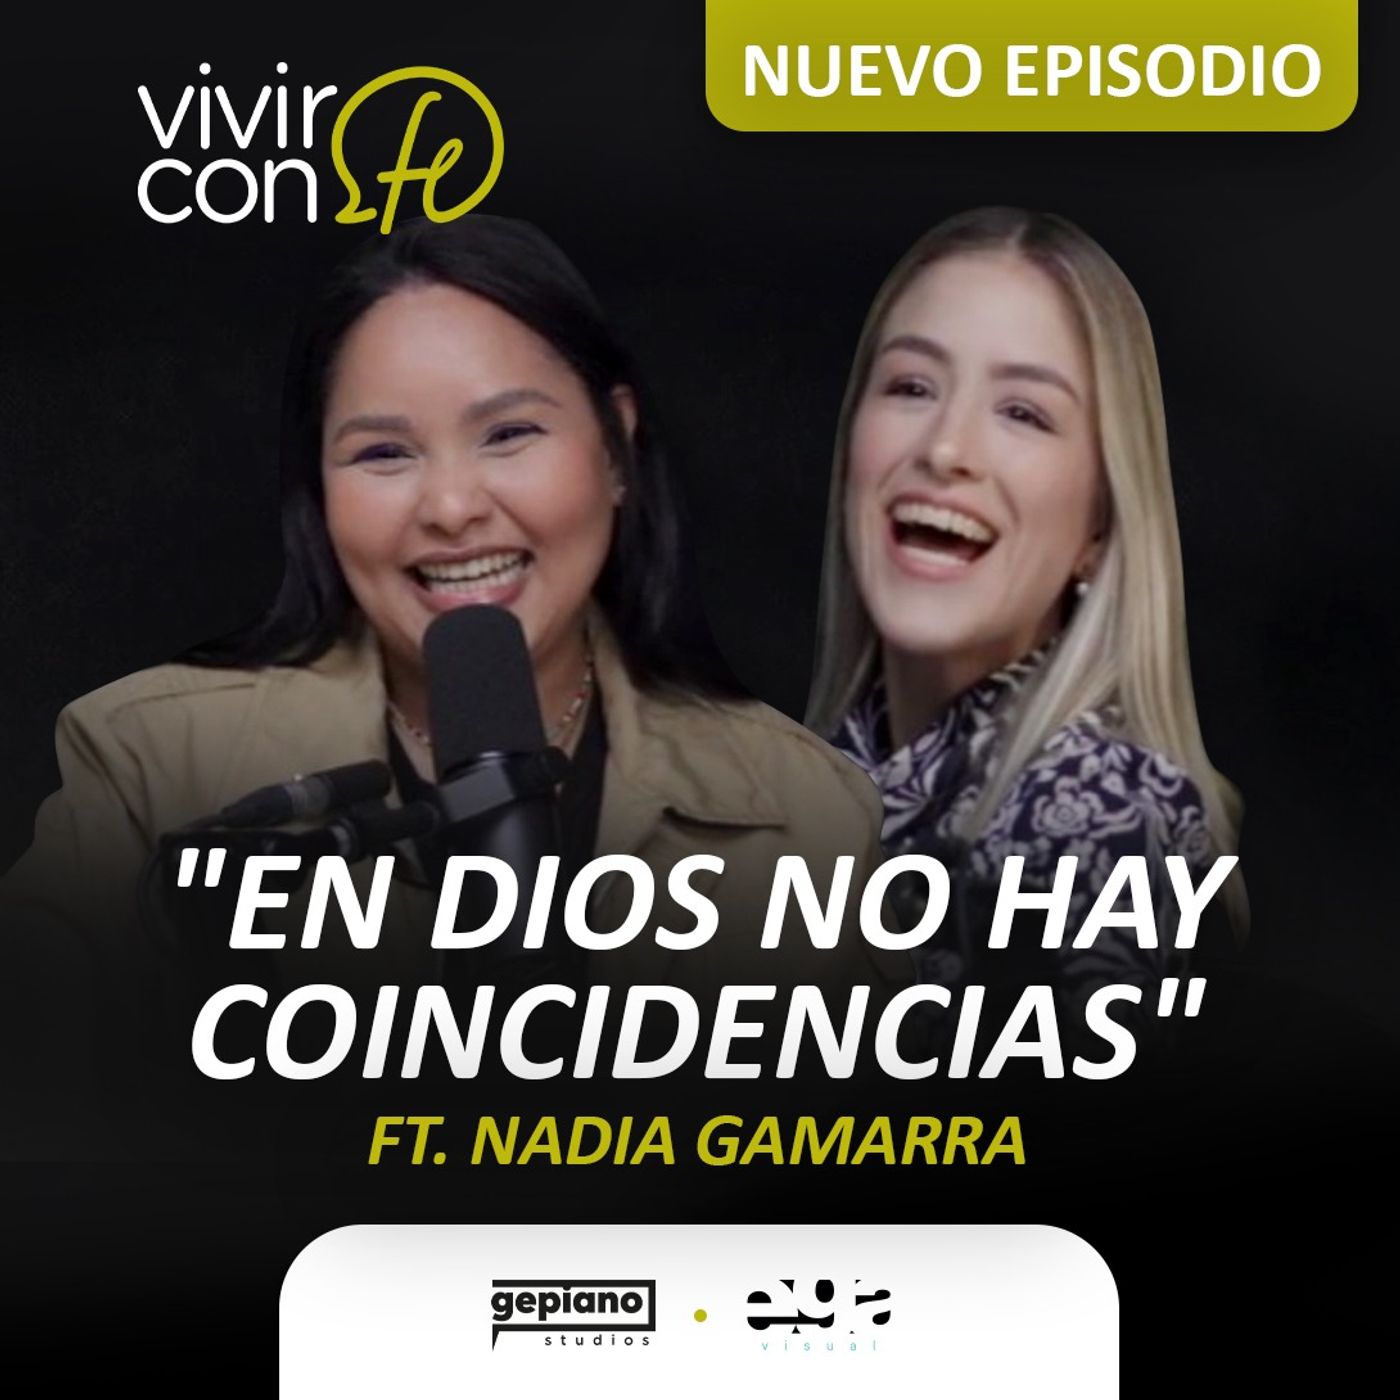 "En Dios no hay coincidencias" Ft. Nadia Gamarra